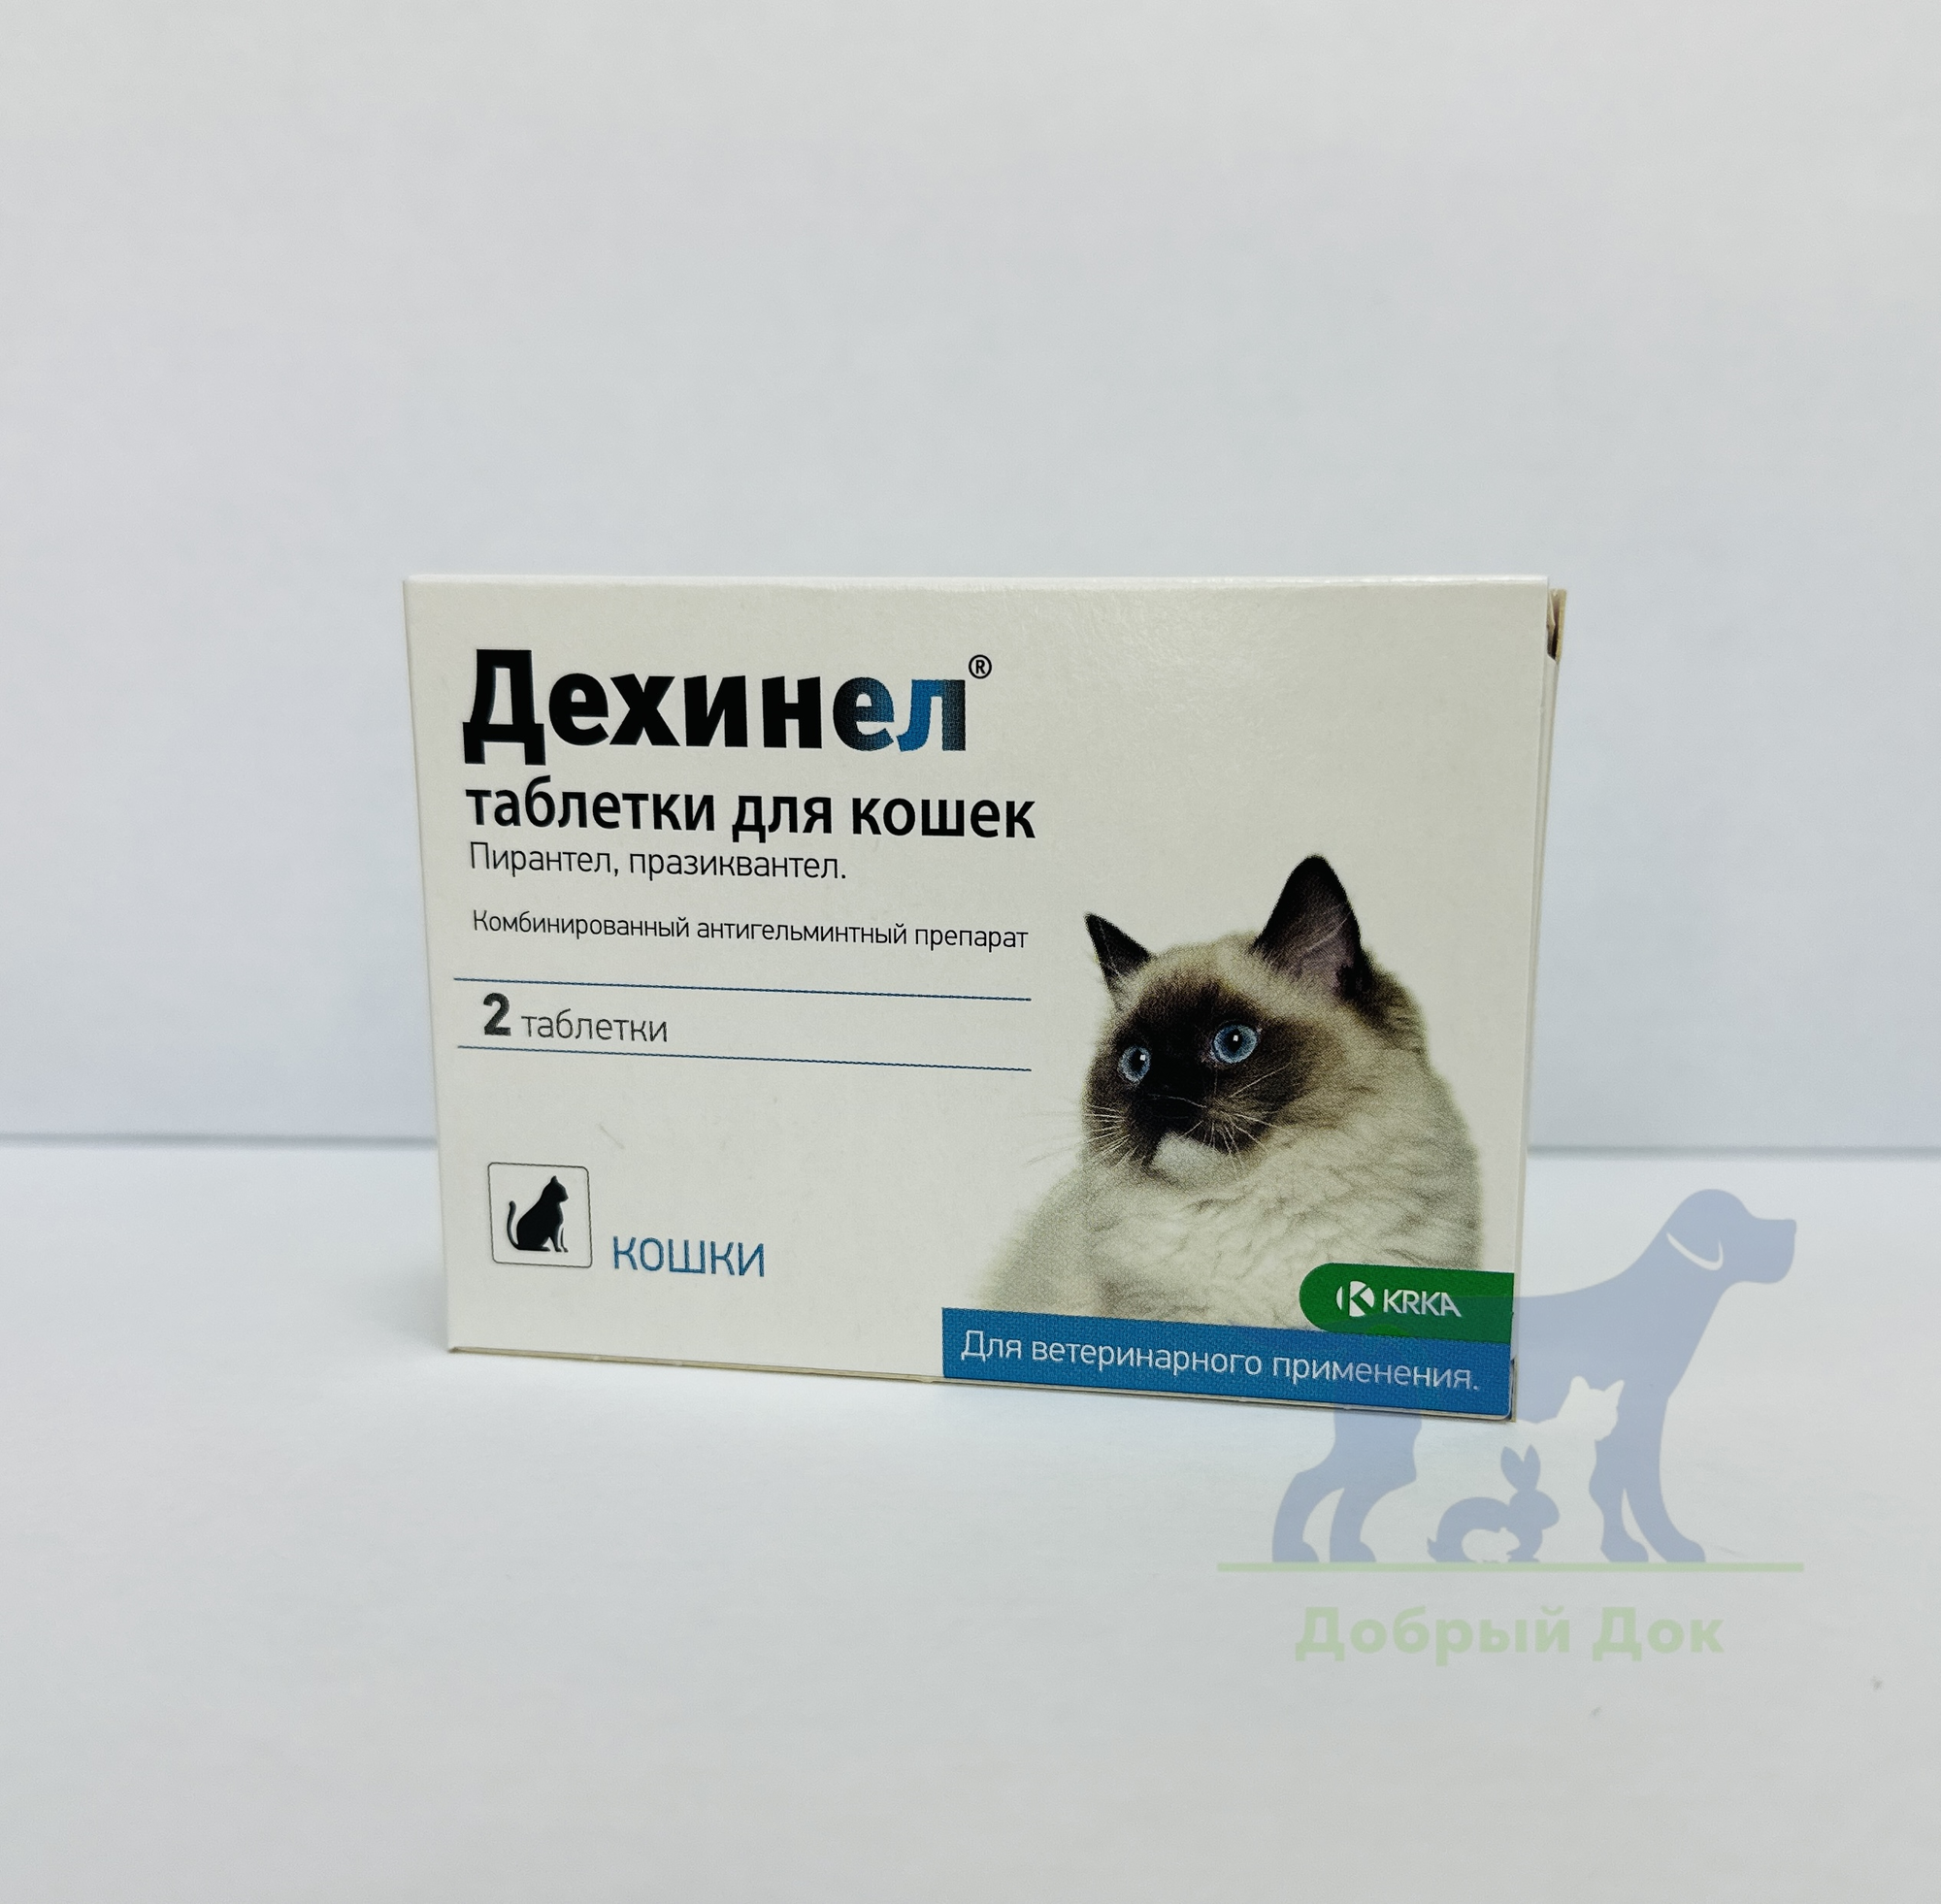 Дехинел таблетки для кошек №2 (2 таблетки в упаковке)